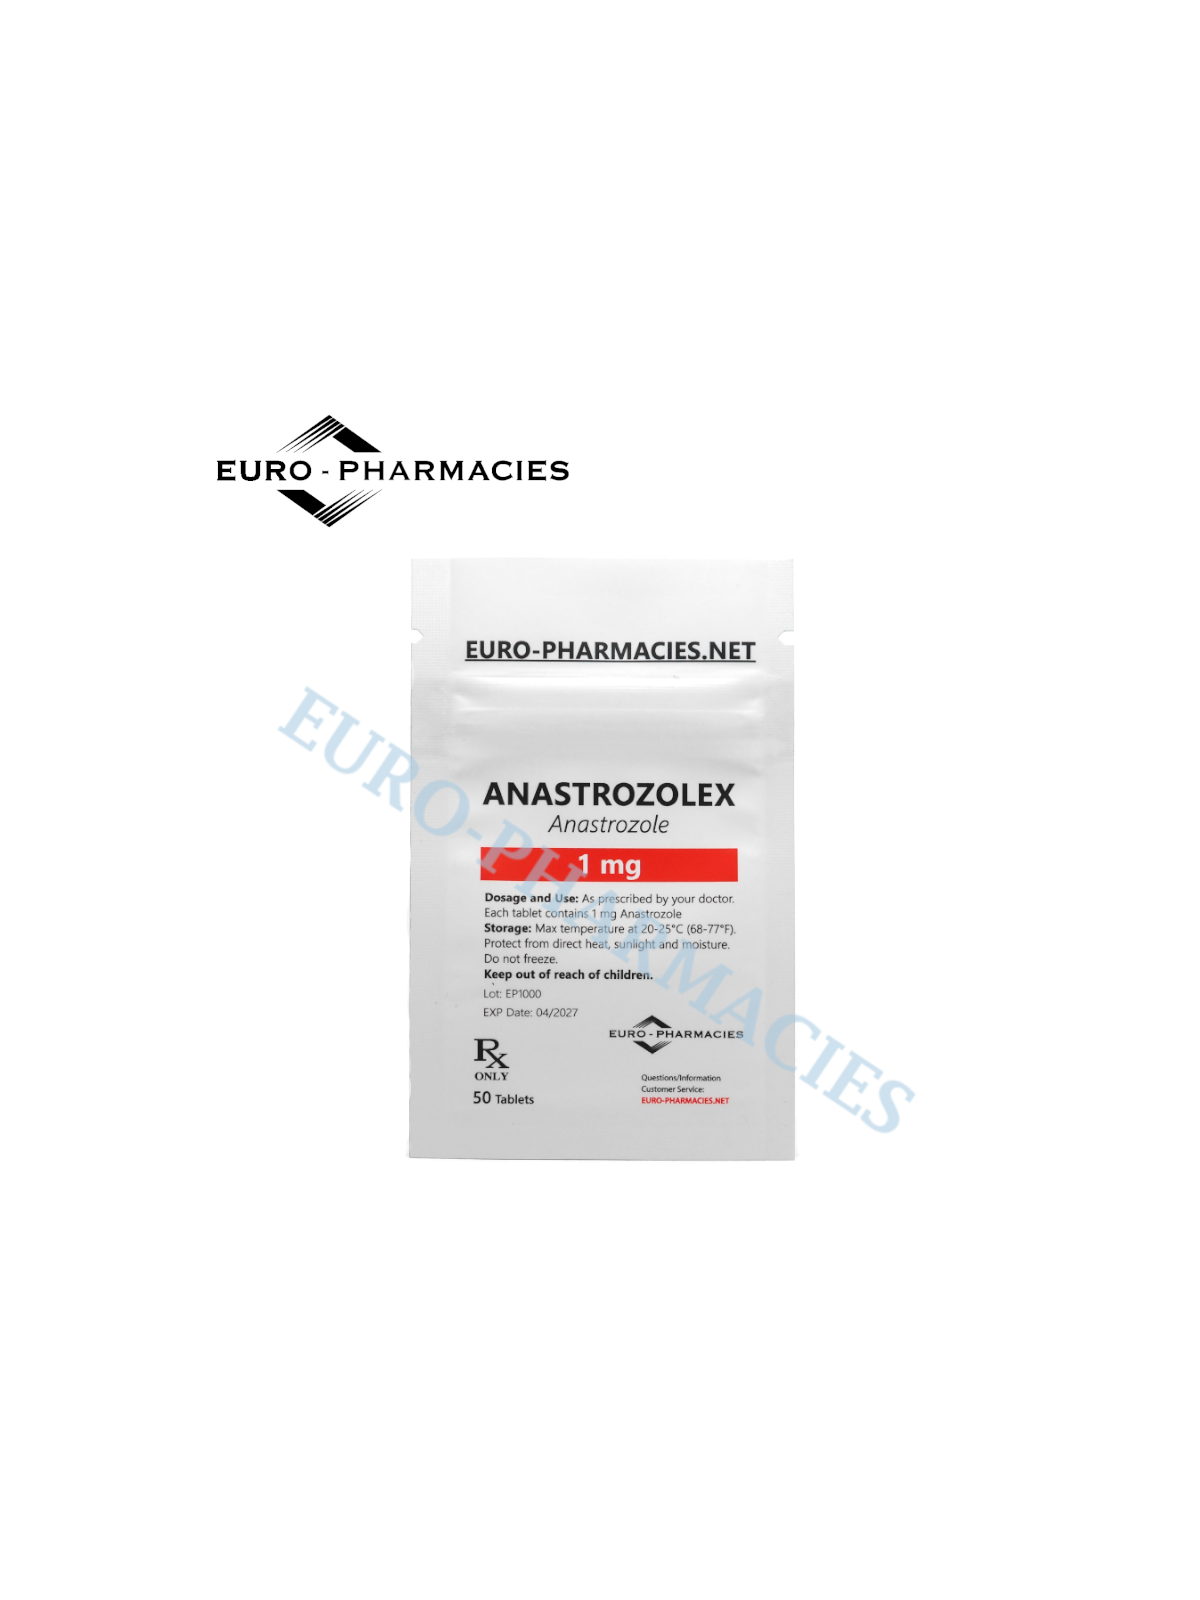 Anastrozolex (Arimidex) 1mg/tab, 50 pills/bag - Euro-Pharmacies - USA